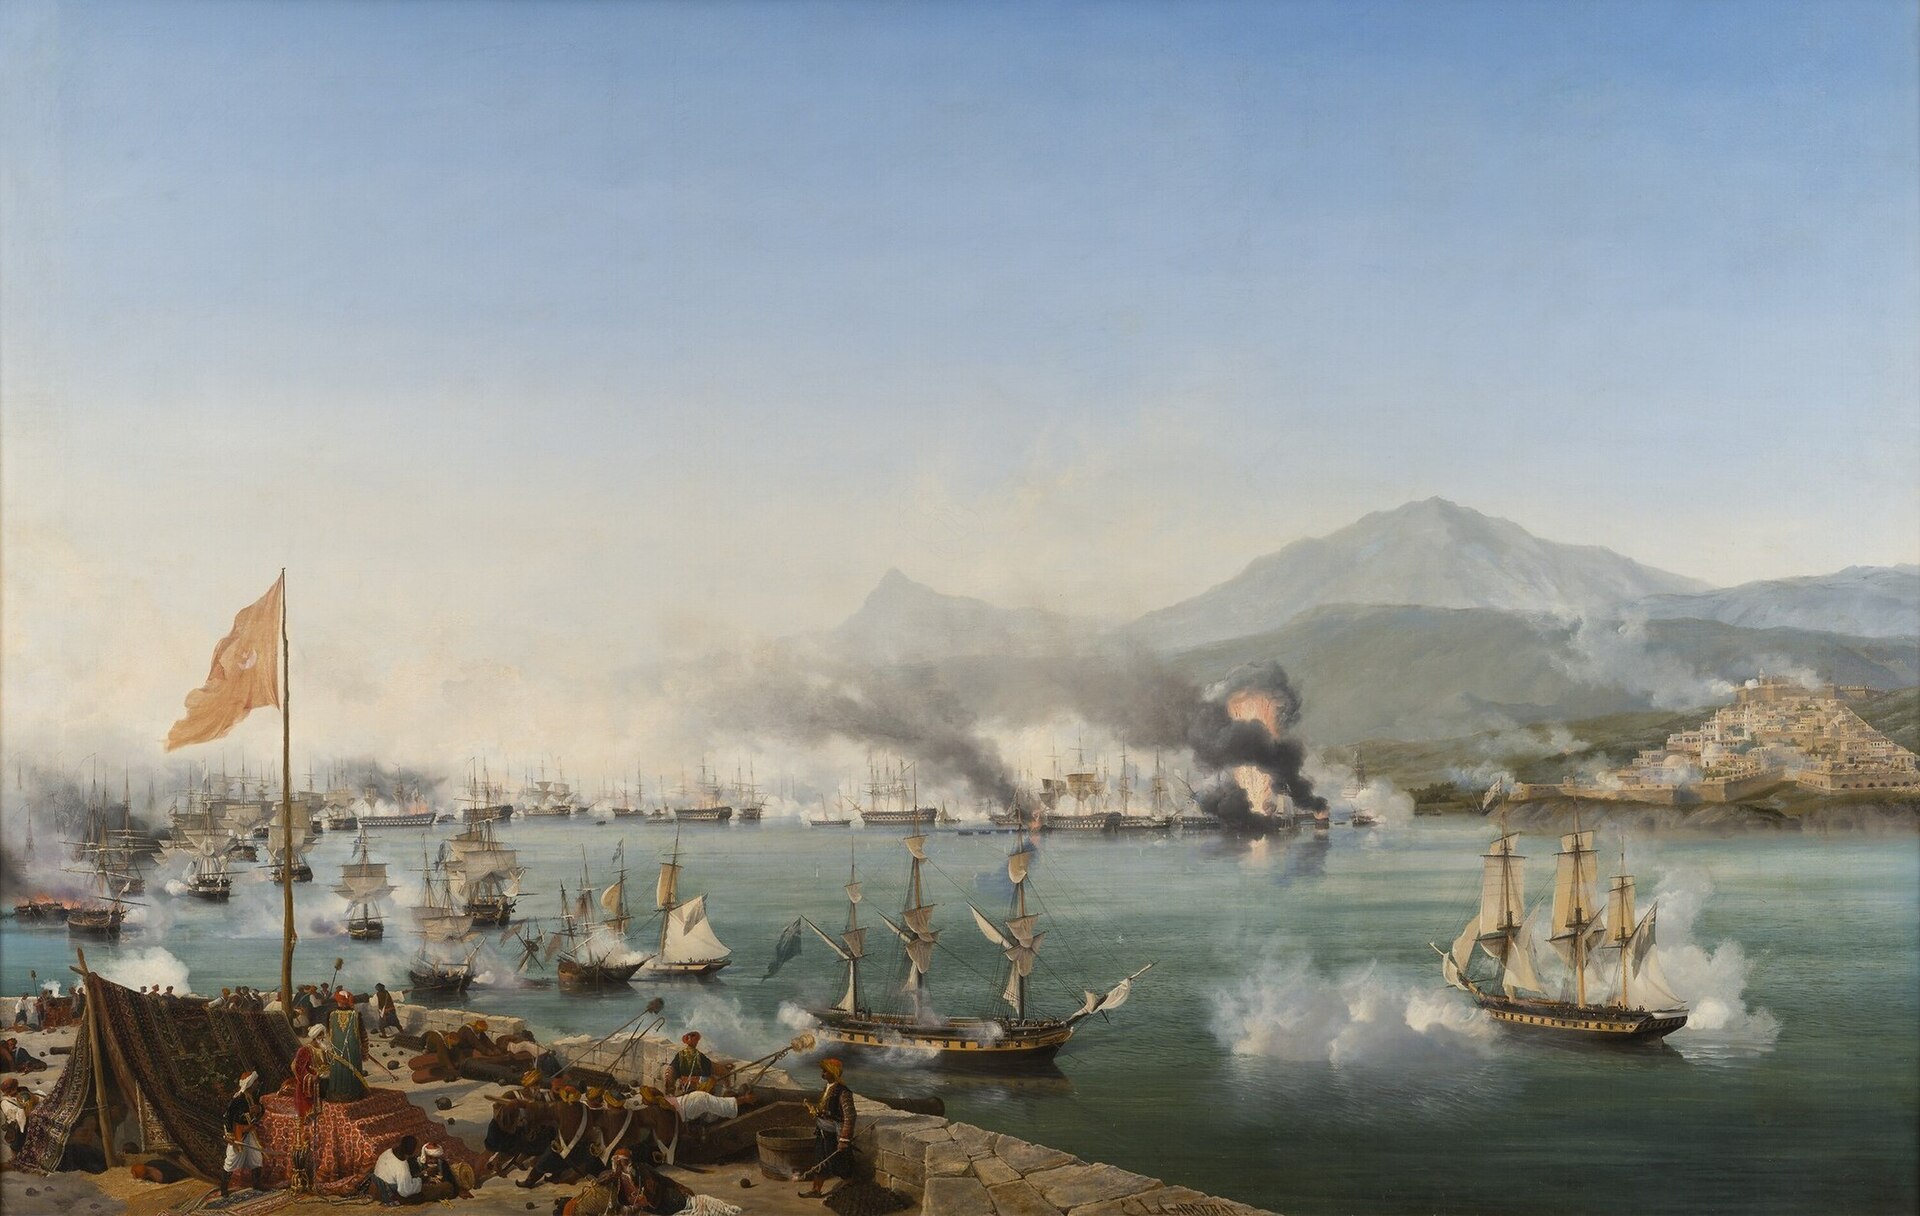 Battle of Navarino